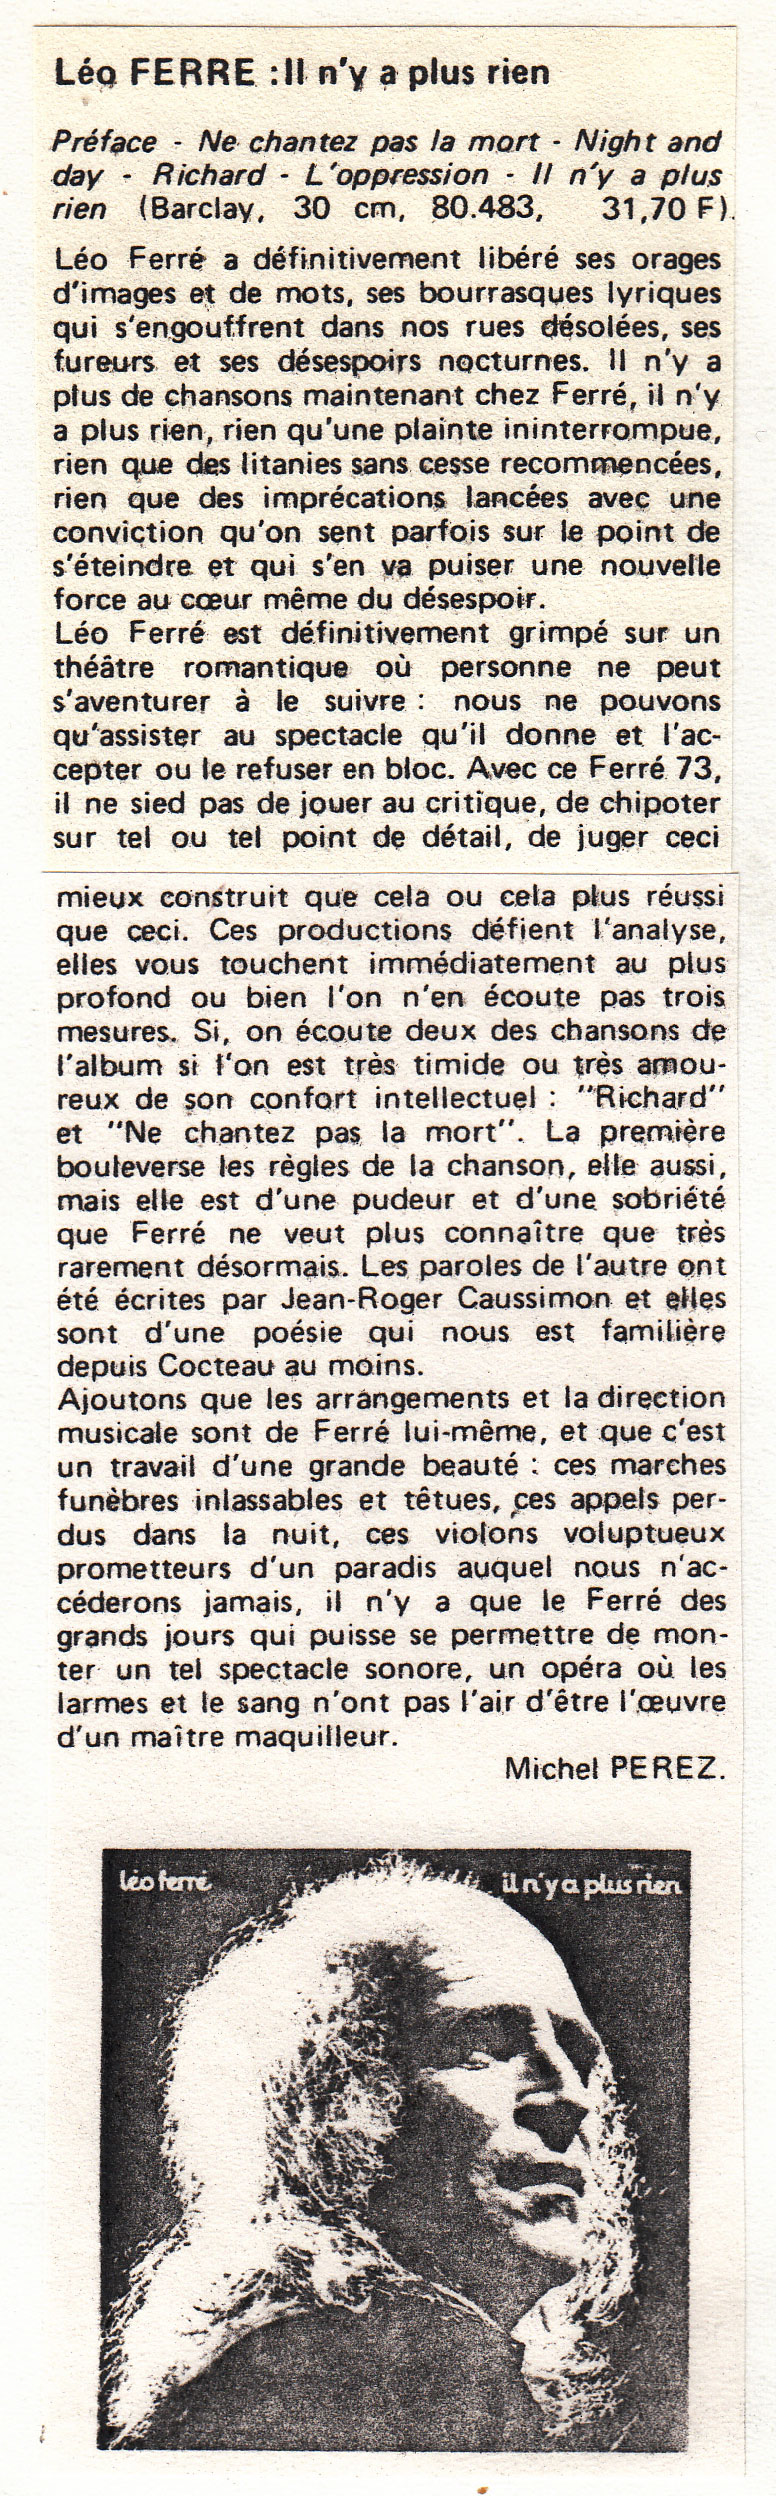 Léo Ferré - Diapason d'avril 1973